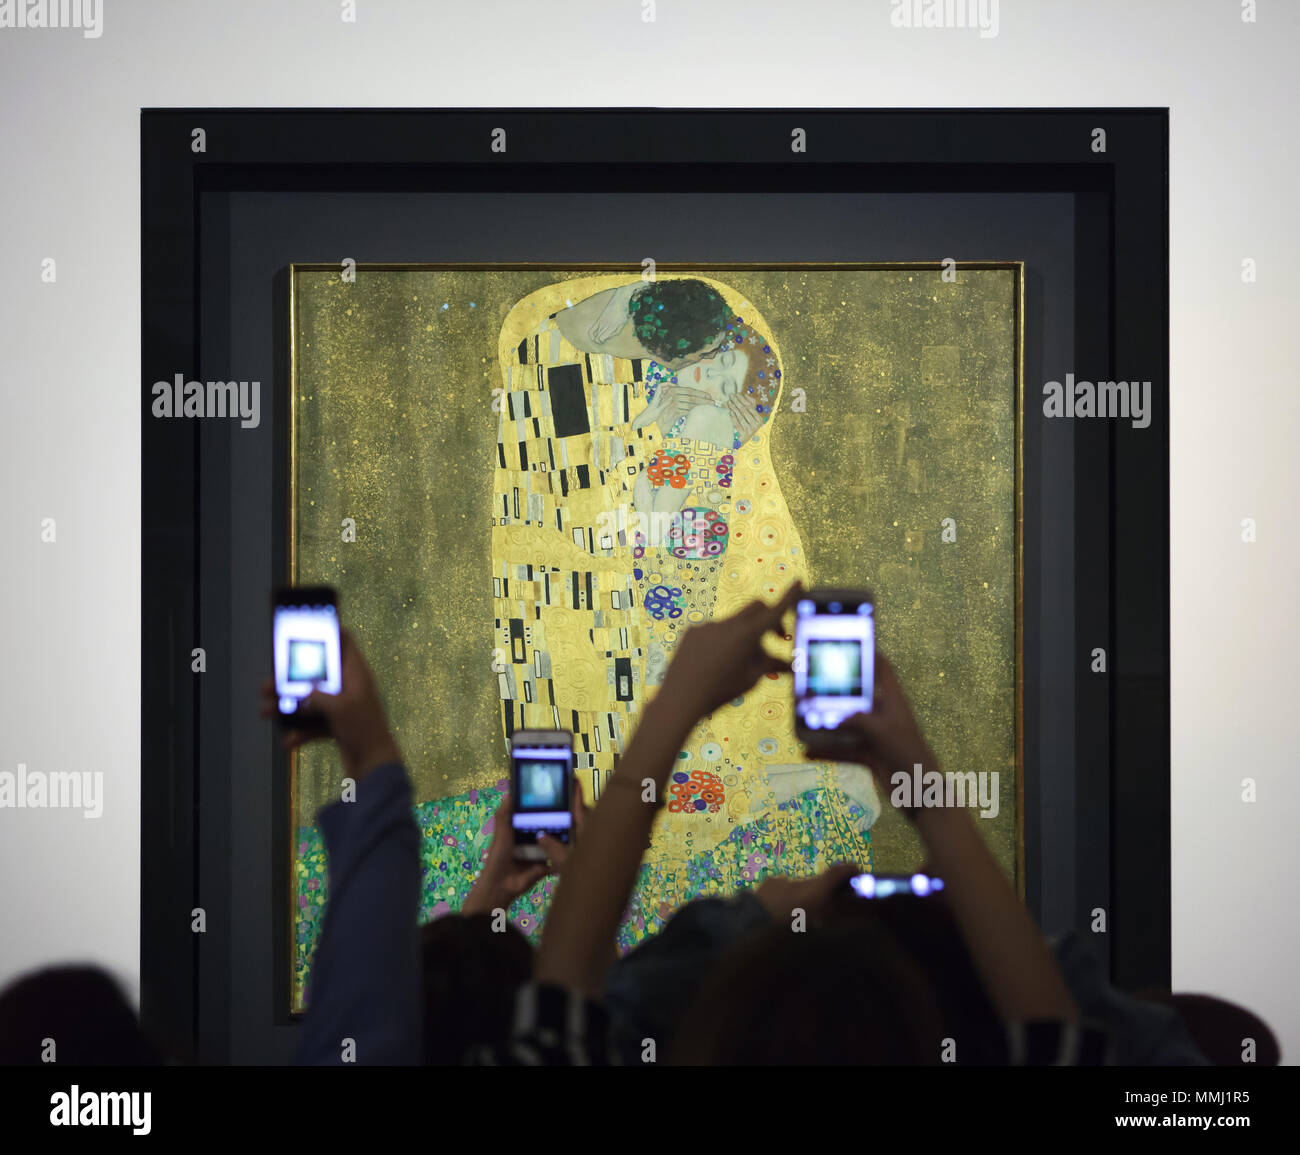 Besucher Smartphones das berühmte Gemälde zu fotografieren, "Der Kuss" (1907-1908) von Österreichischen symbolistische Maler Gustav Klimt im Belvedere Museum in Wien, Österreich, angezeigt. Stockfoto